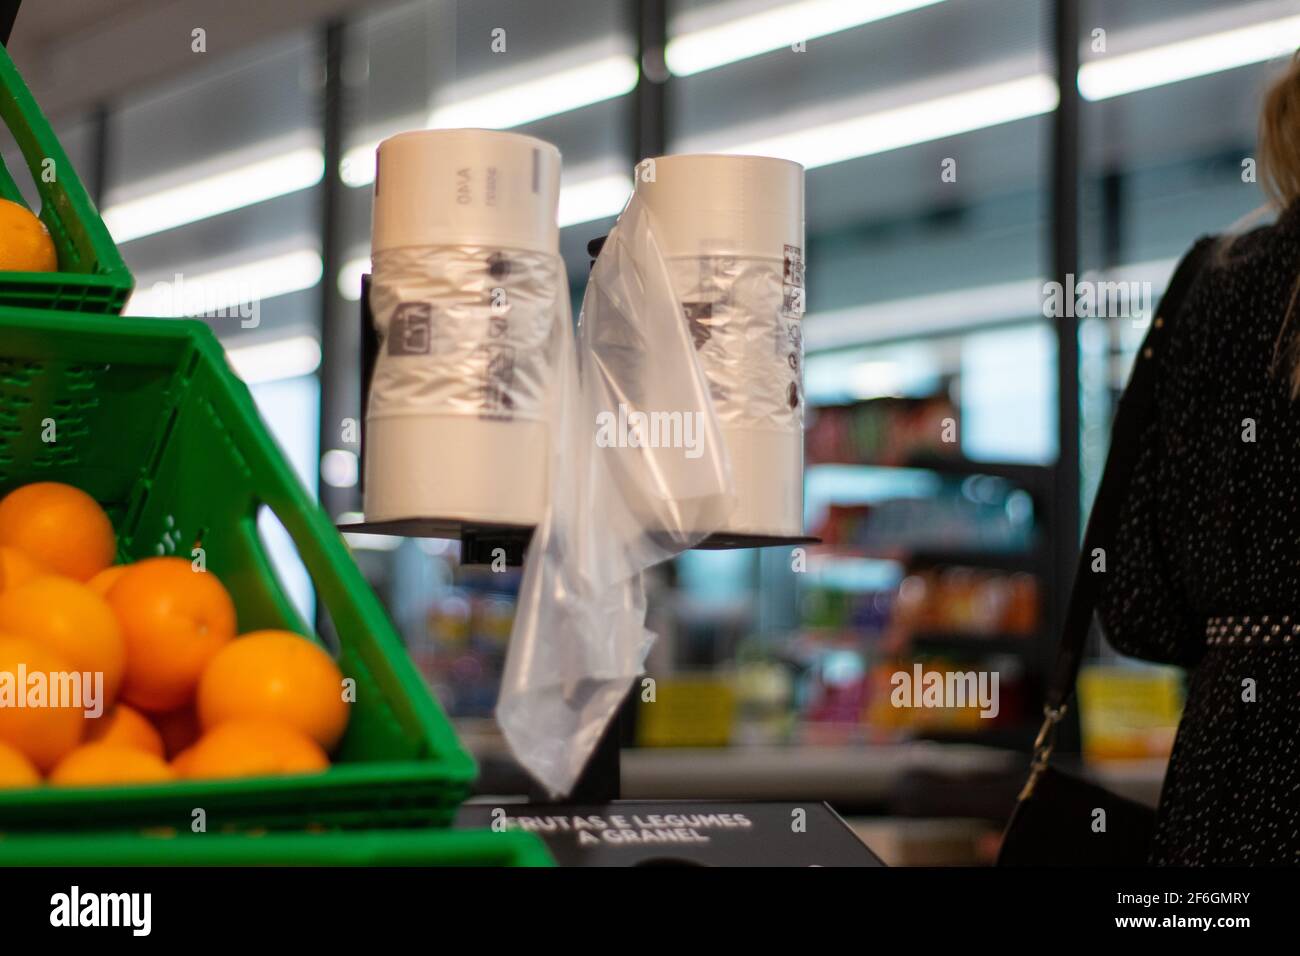 Verwendung von Plastiktüten in Märkten für Obst und Gemüse In der Nähe von Orangen Stockfoto